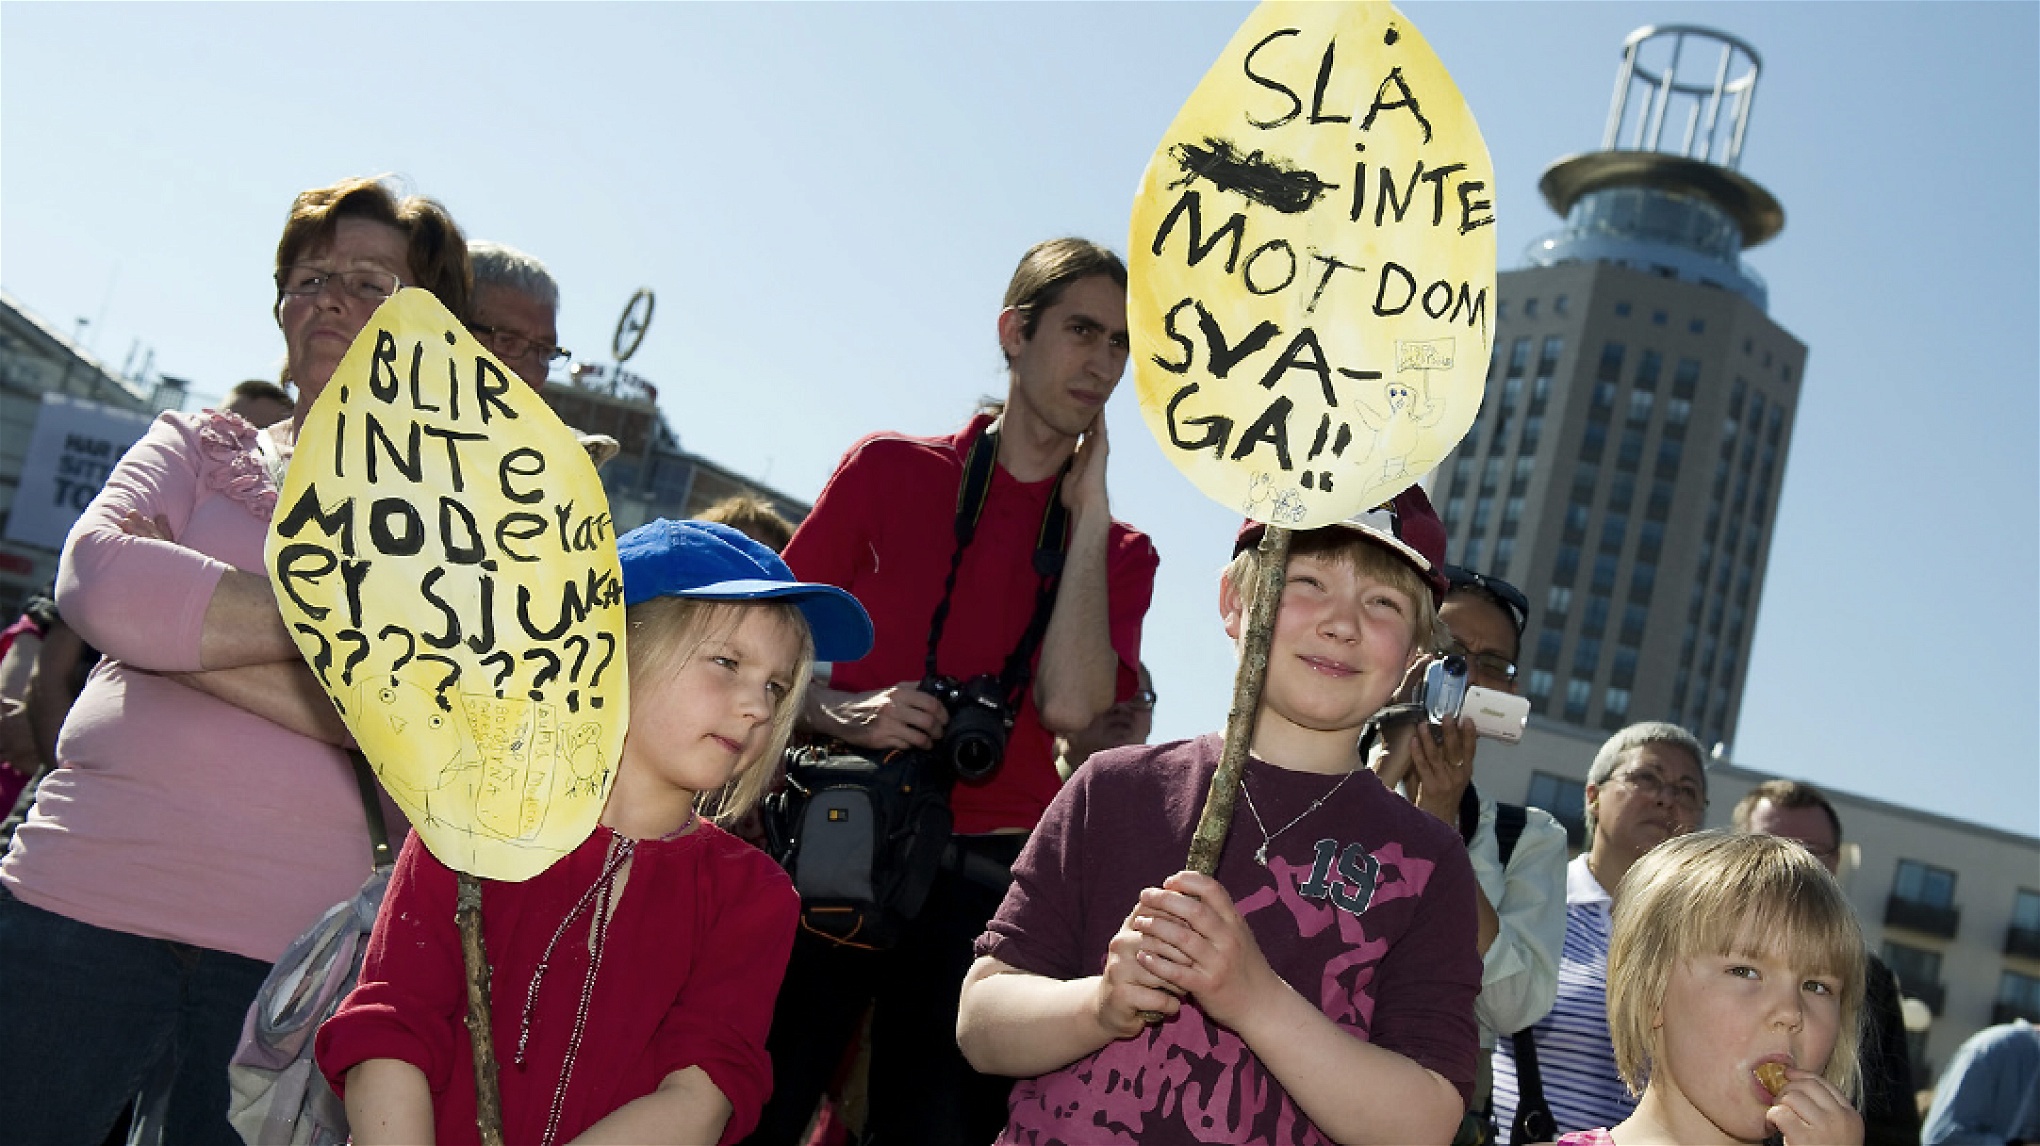 I april 2011 när Påskupproret startades trodde många att utförsäkringarna skulle komma att bli en helt avgörande fråga vid valet 2014. 42 000 utförsäkrade var
mer än vad Sveriges självbild tålde. I dag har över 86 000 utförsäkrats. På bilden syns några barn demonstrera på Medborgarplatsen i Stockholm.